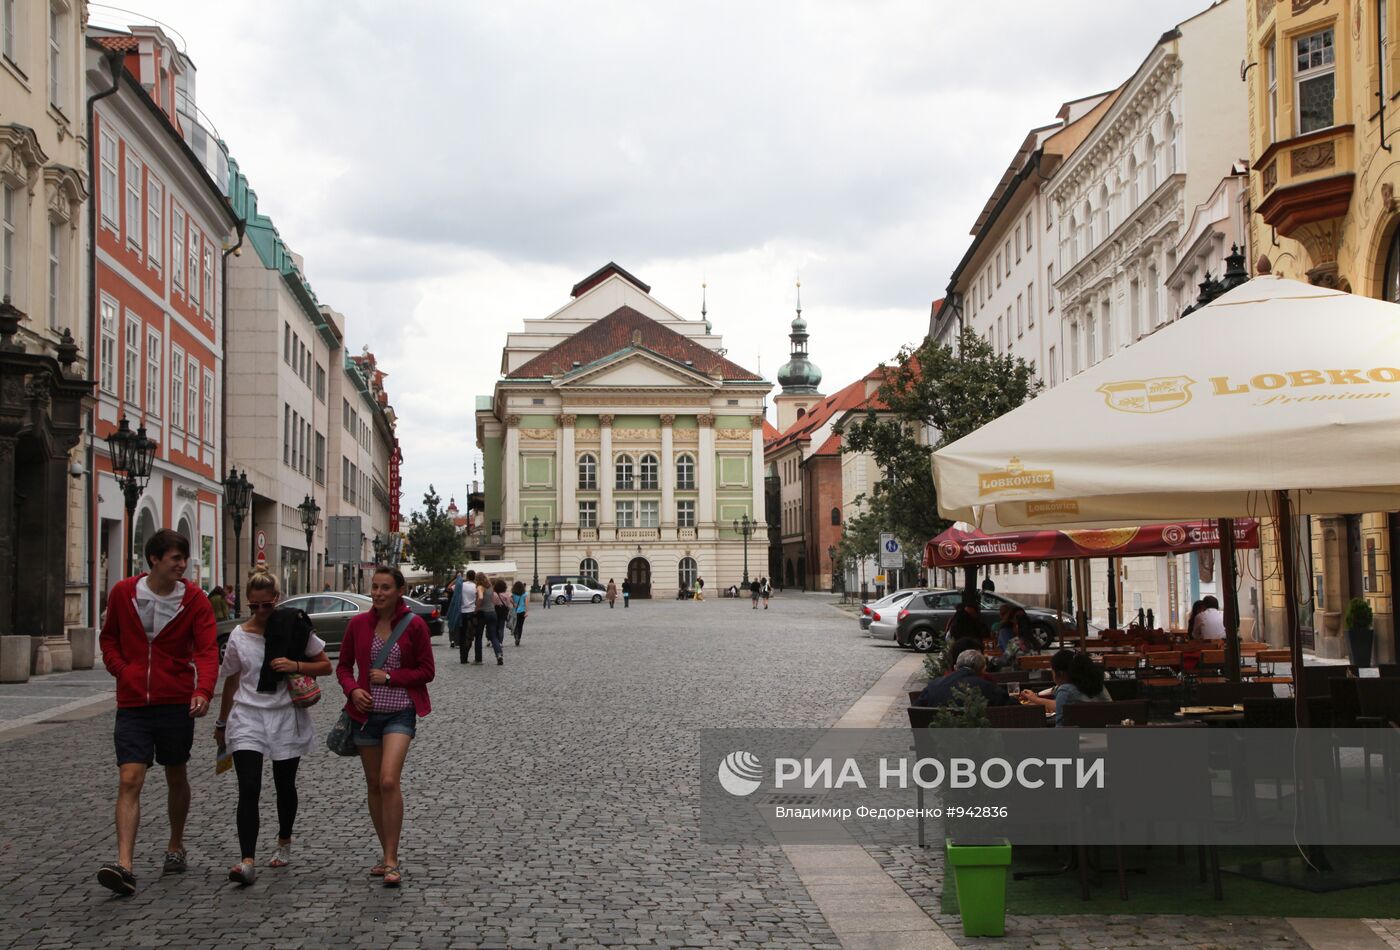 Площадь Фруктового рынка в Праге